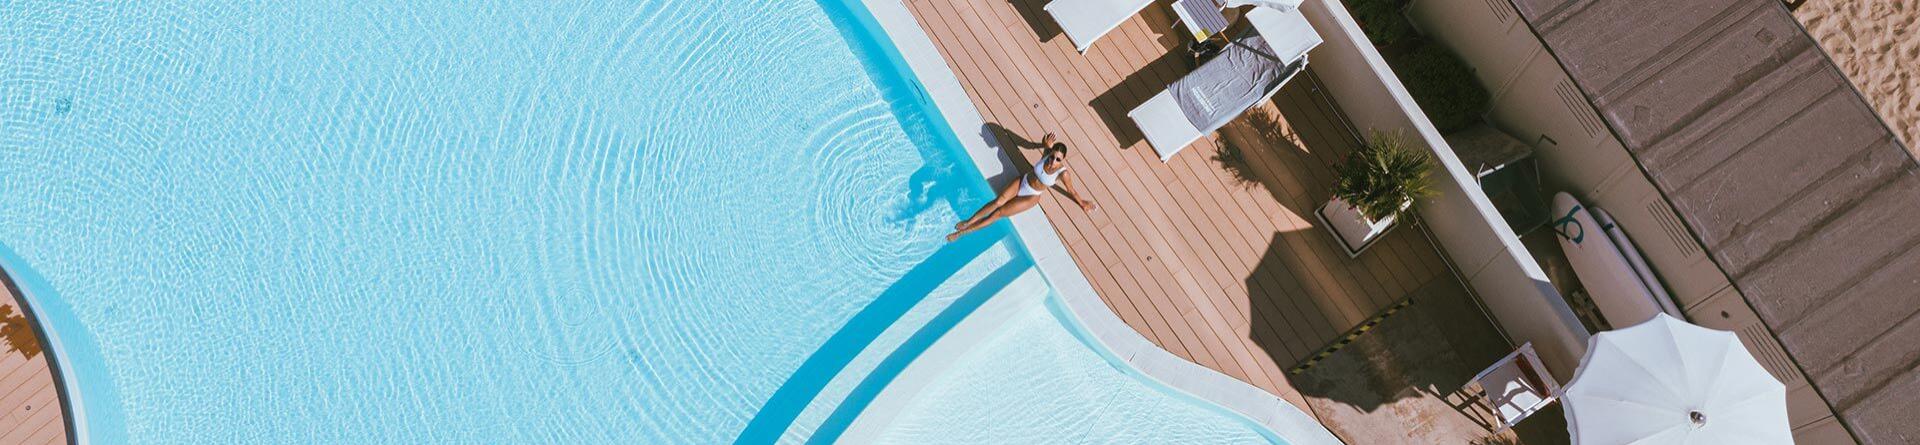 hotelnautiluspesaro it offerta-prenota-prima-in-hotel-di-pesaro-con-piscina-e-spiaggia-inclusa 007